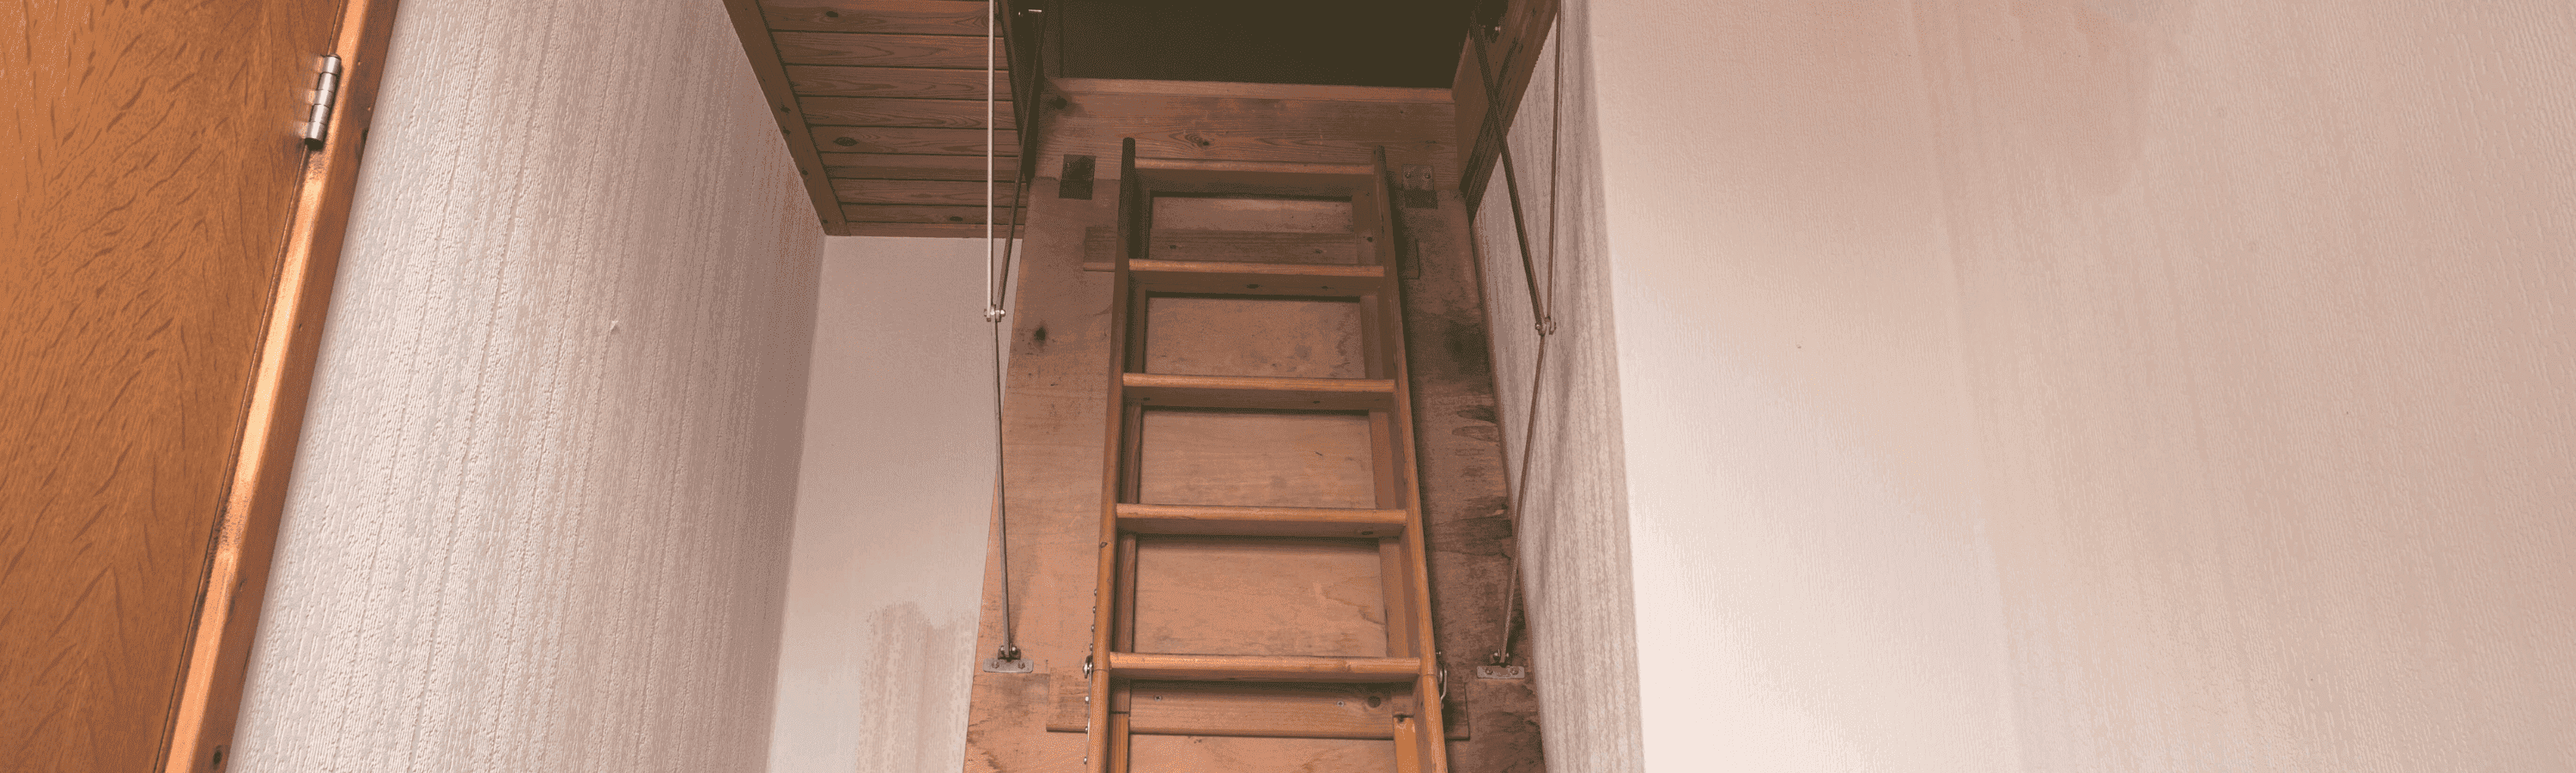 Garage Pulldown Ladder (Wooden)